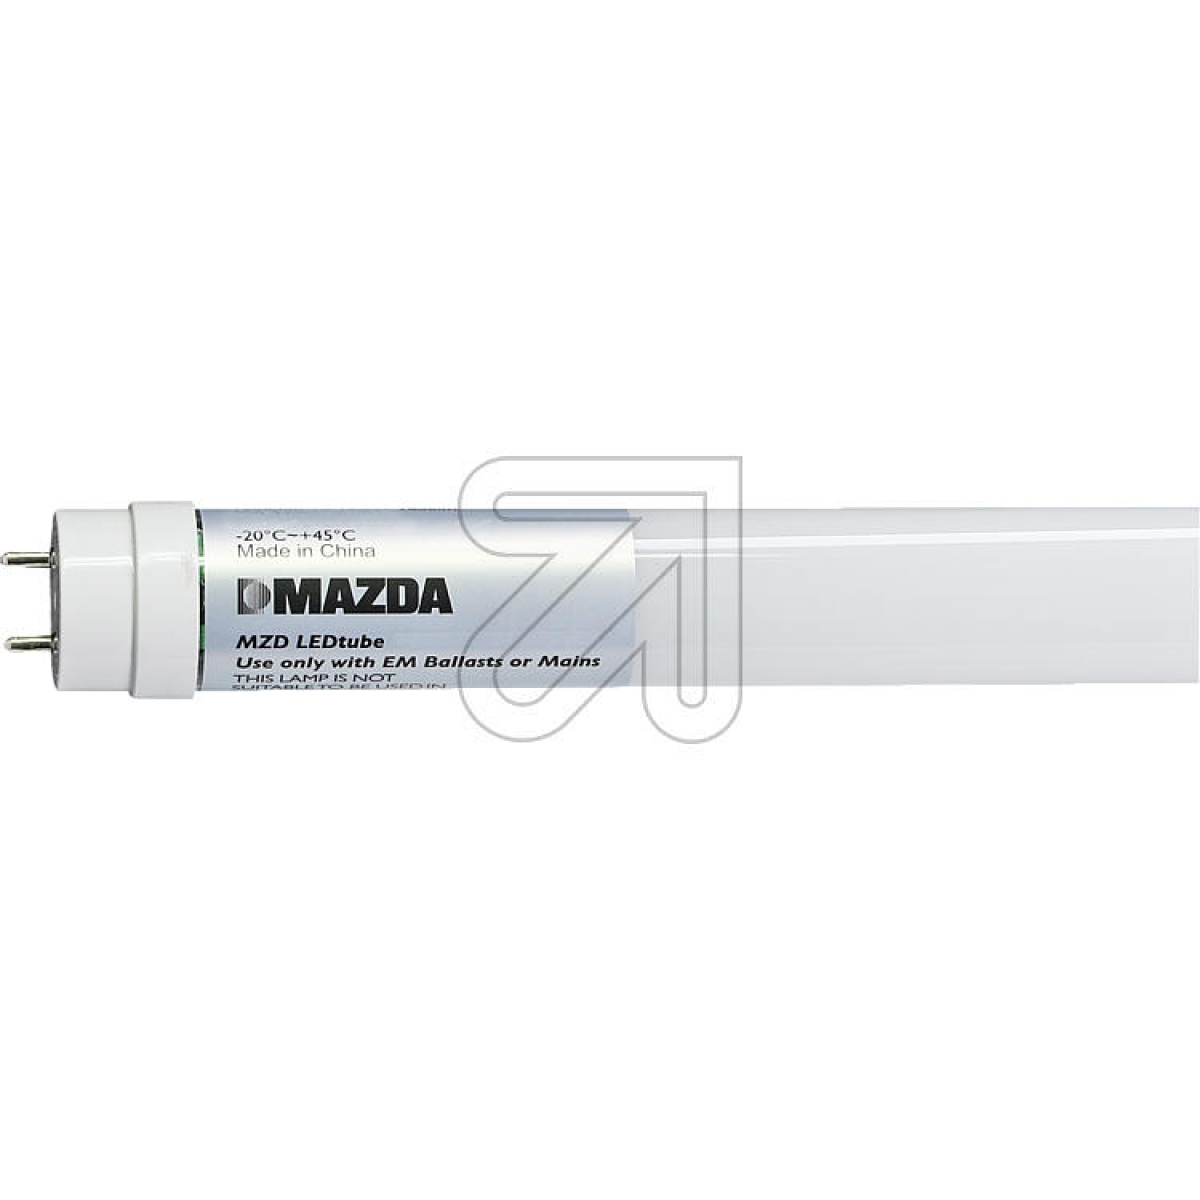 MAZDA LightingMAZDA LEDtube T8 1200mm UO 21.5W 840 54374100-Price for 20 pcs.Article-No: 523030